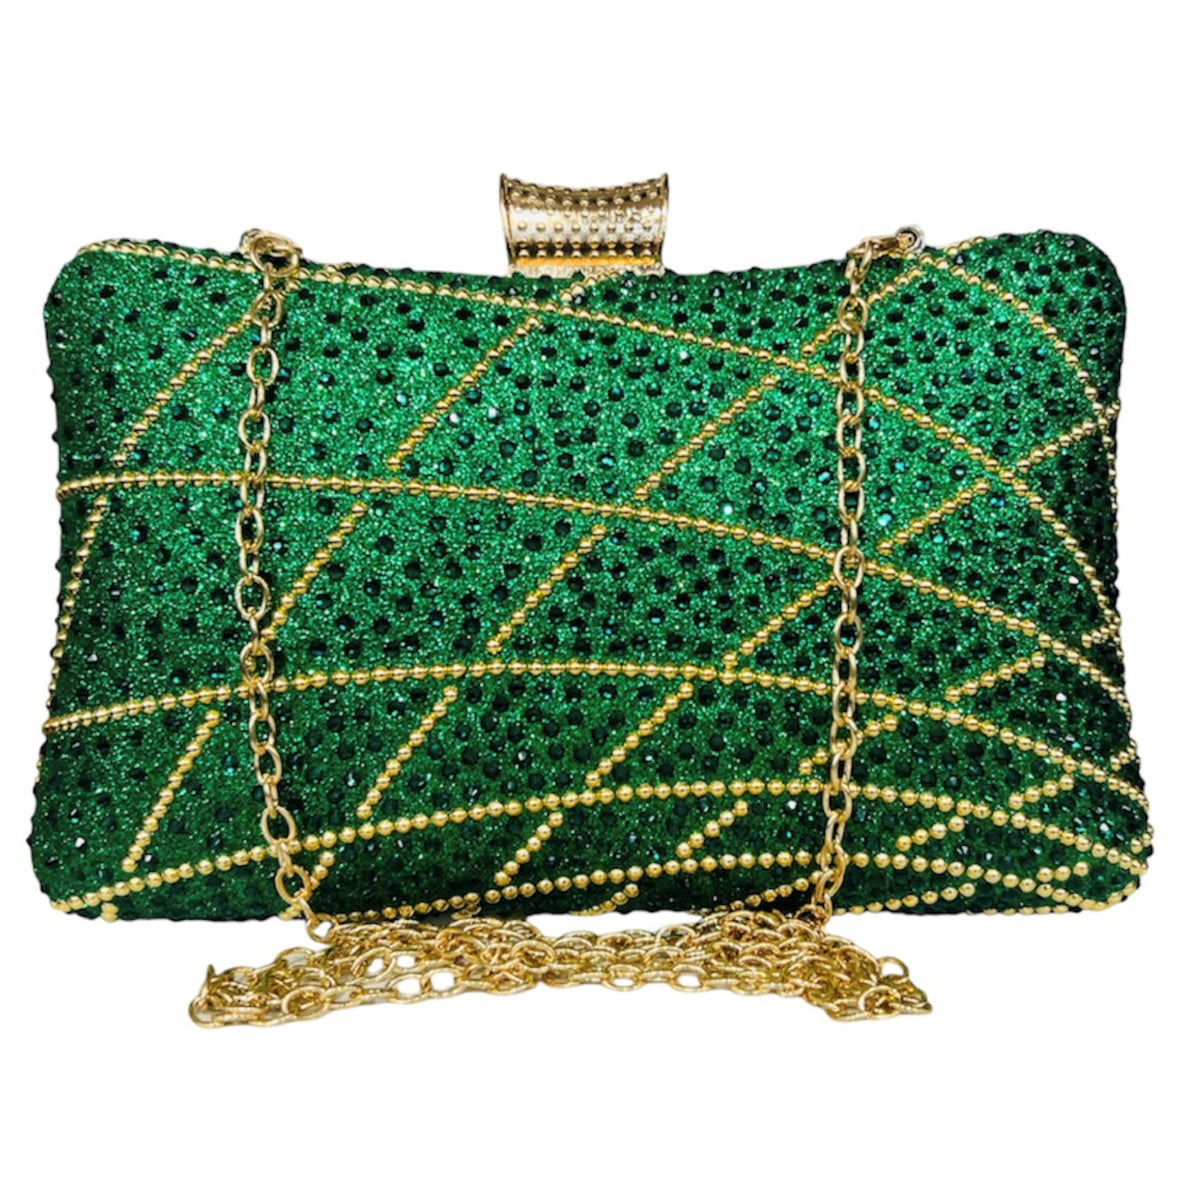 Pour les plus grands galas et soirées, le sac de soirée Manon Vert vous accompagnera avec style. Sa couleur verte pepsy et son élégant design vous offriront un look ravissant toute la nuit. 13cm X 19 cm.